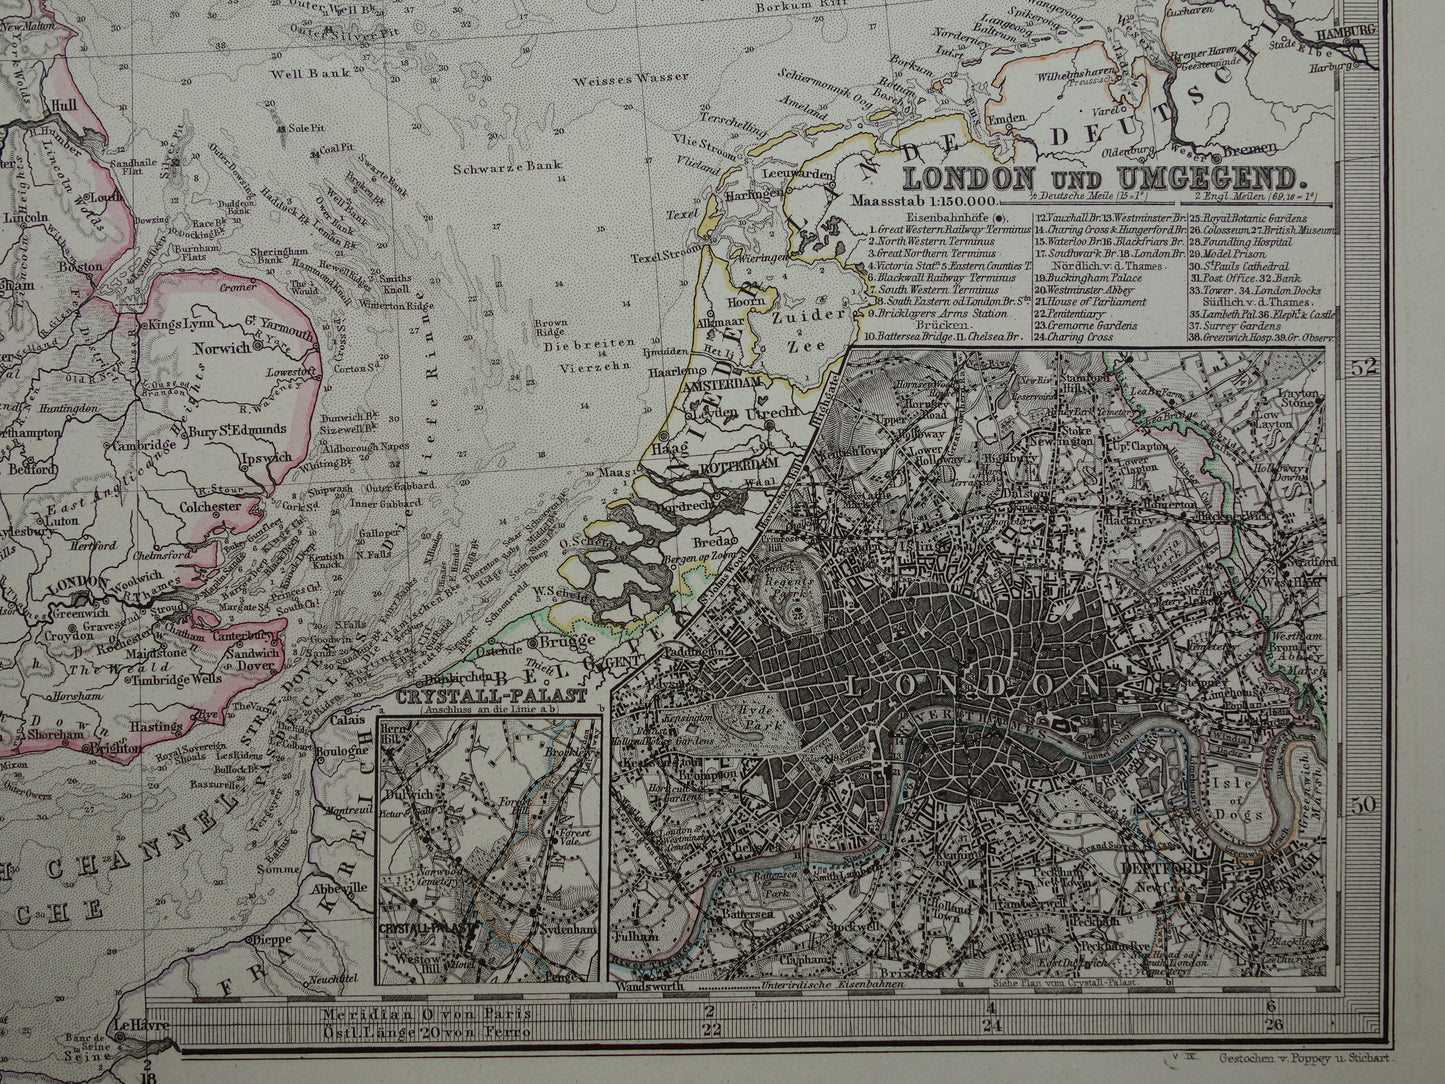 NOORDZEE Oude kaart van Britse eilanden Nederland 1879 originele oude antieke Duitse landkaart / zeekaart Engeland